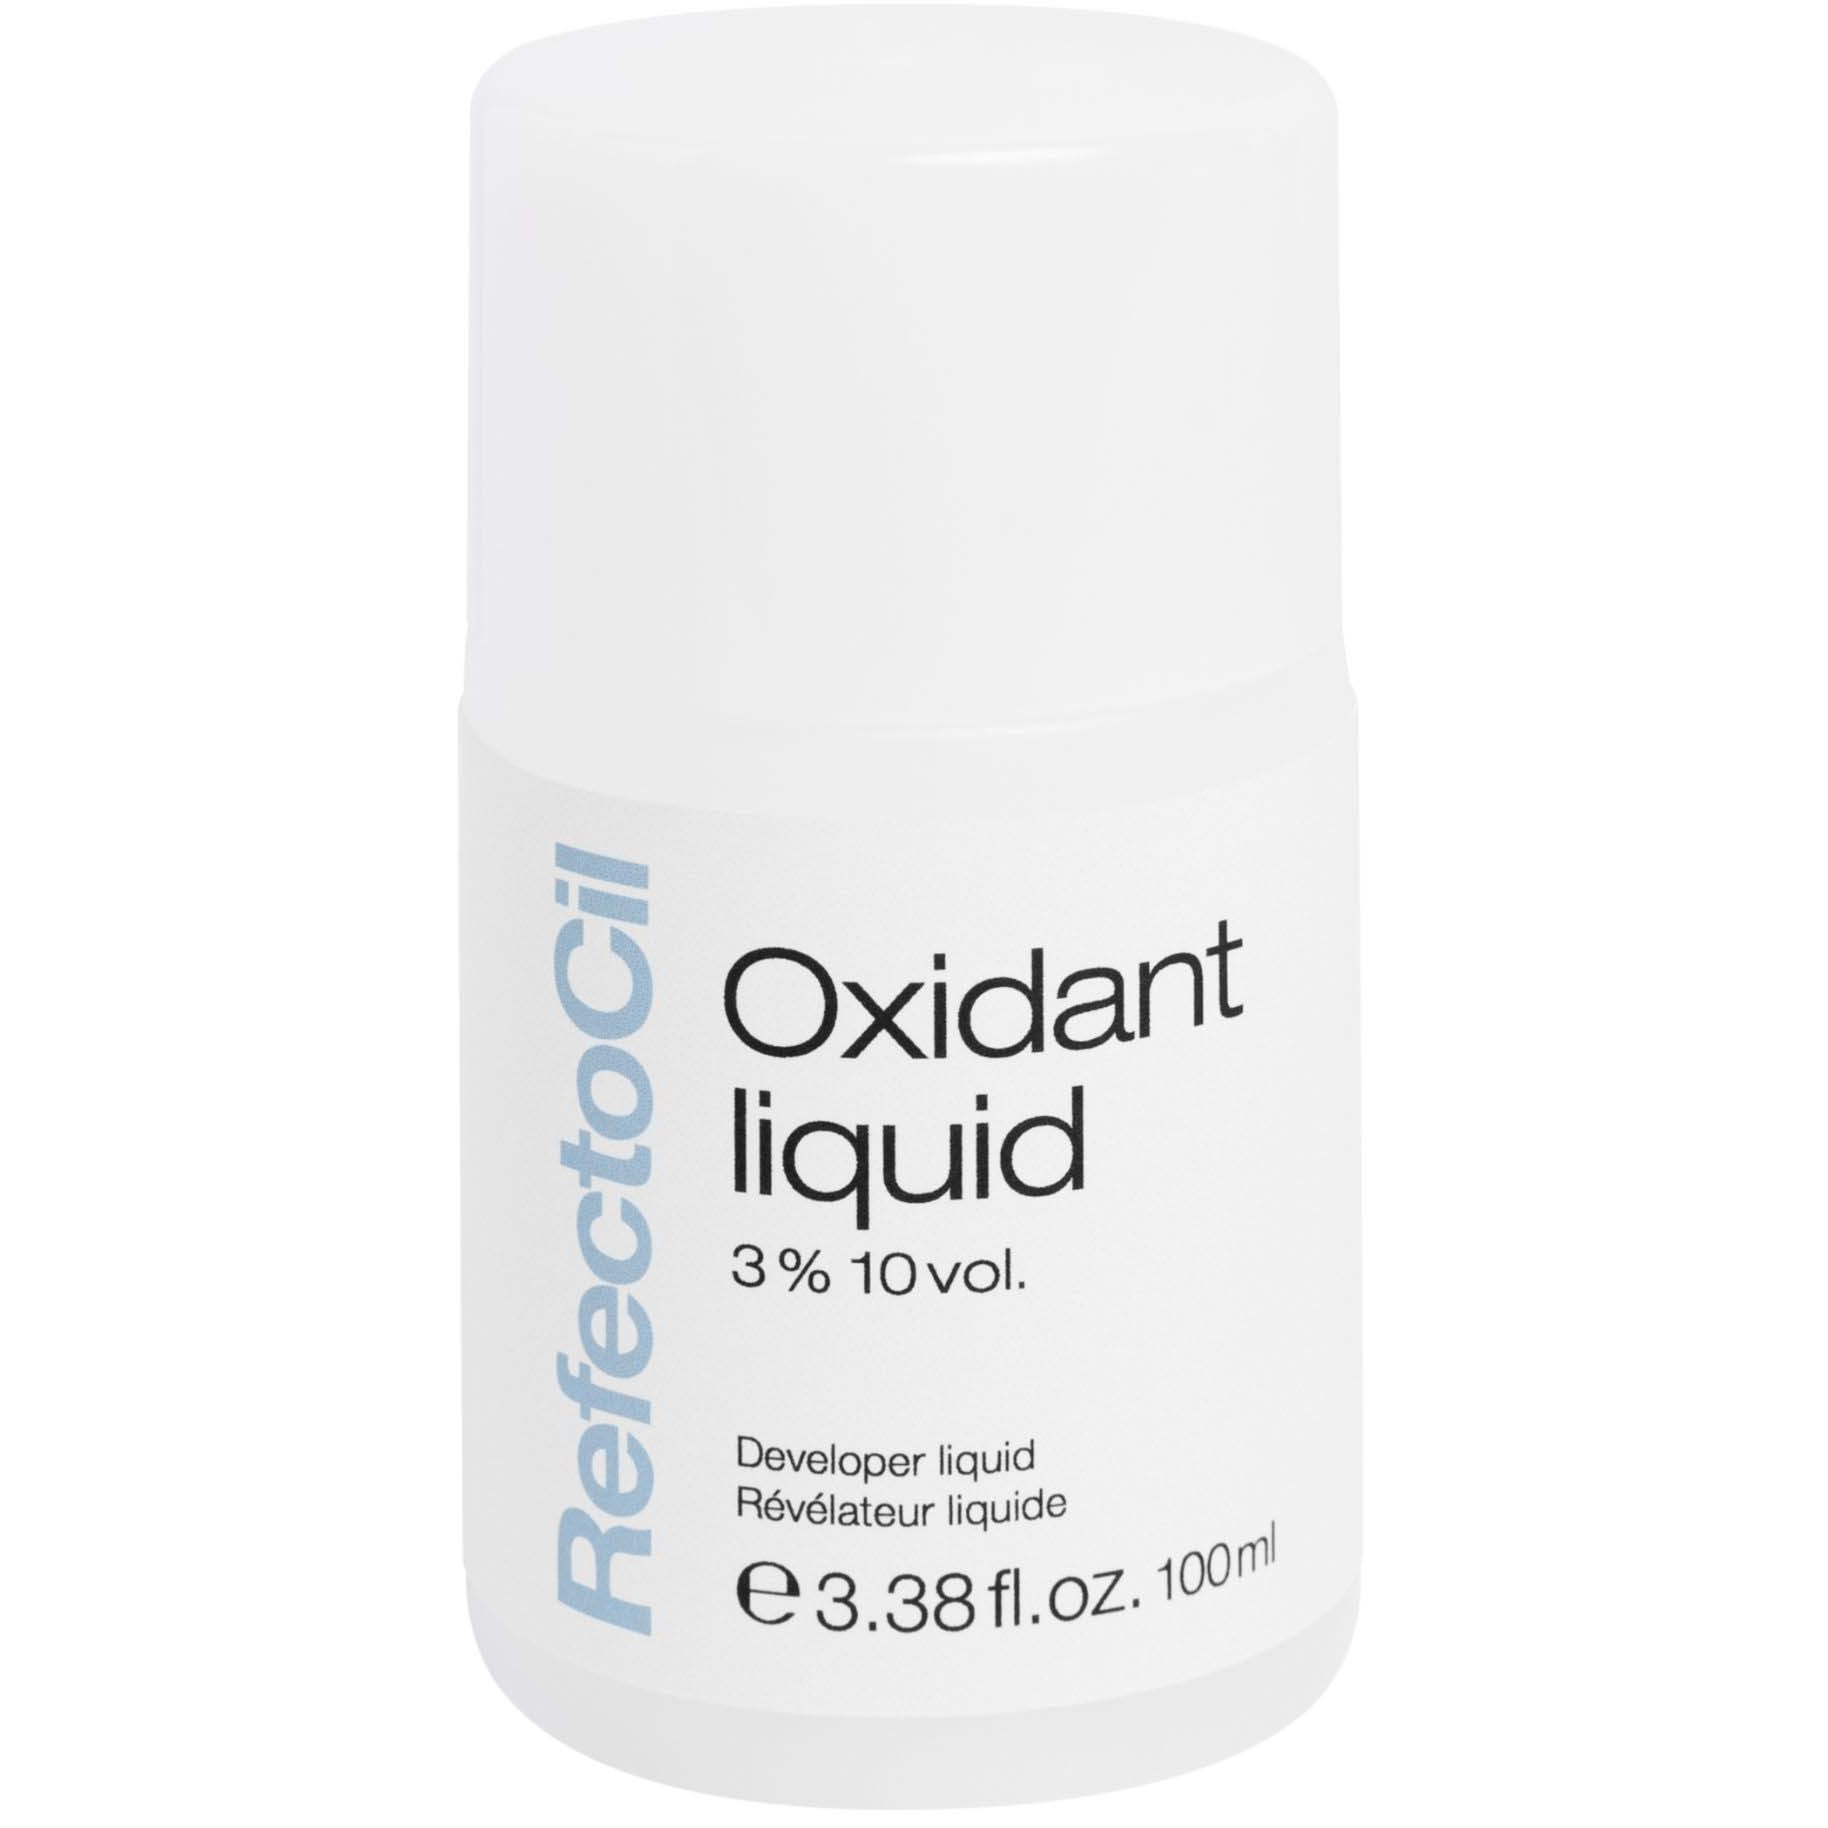 Bilde av Refectocil Oxidant 3% Liquid (10 Vol.) 100 Ml